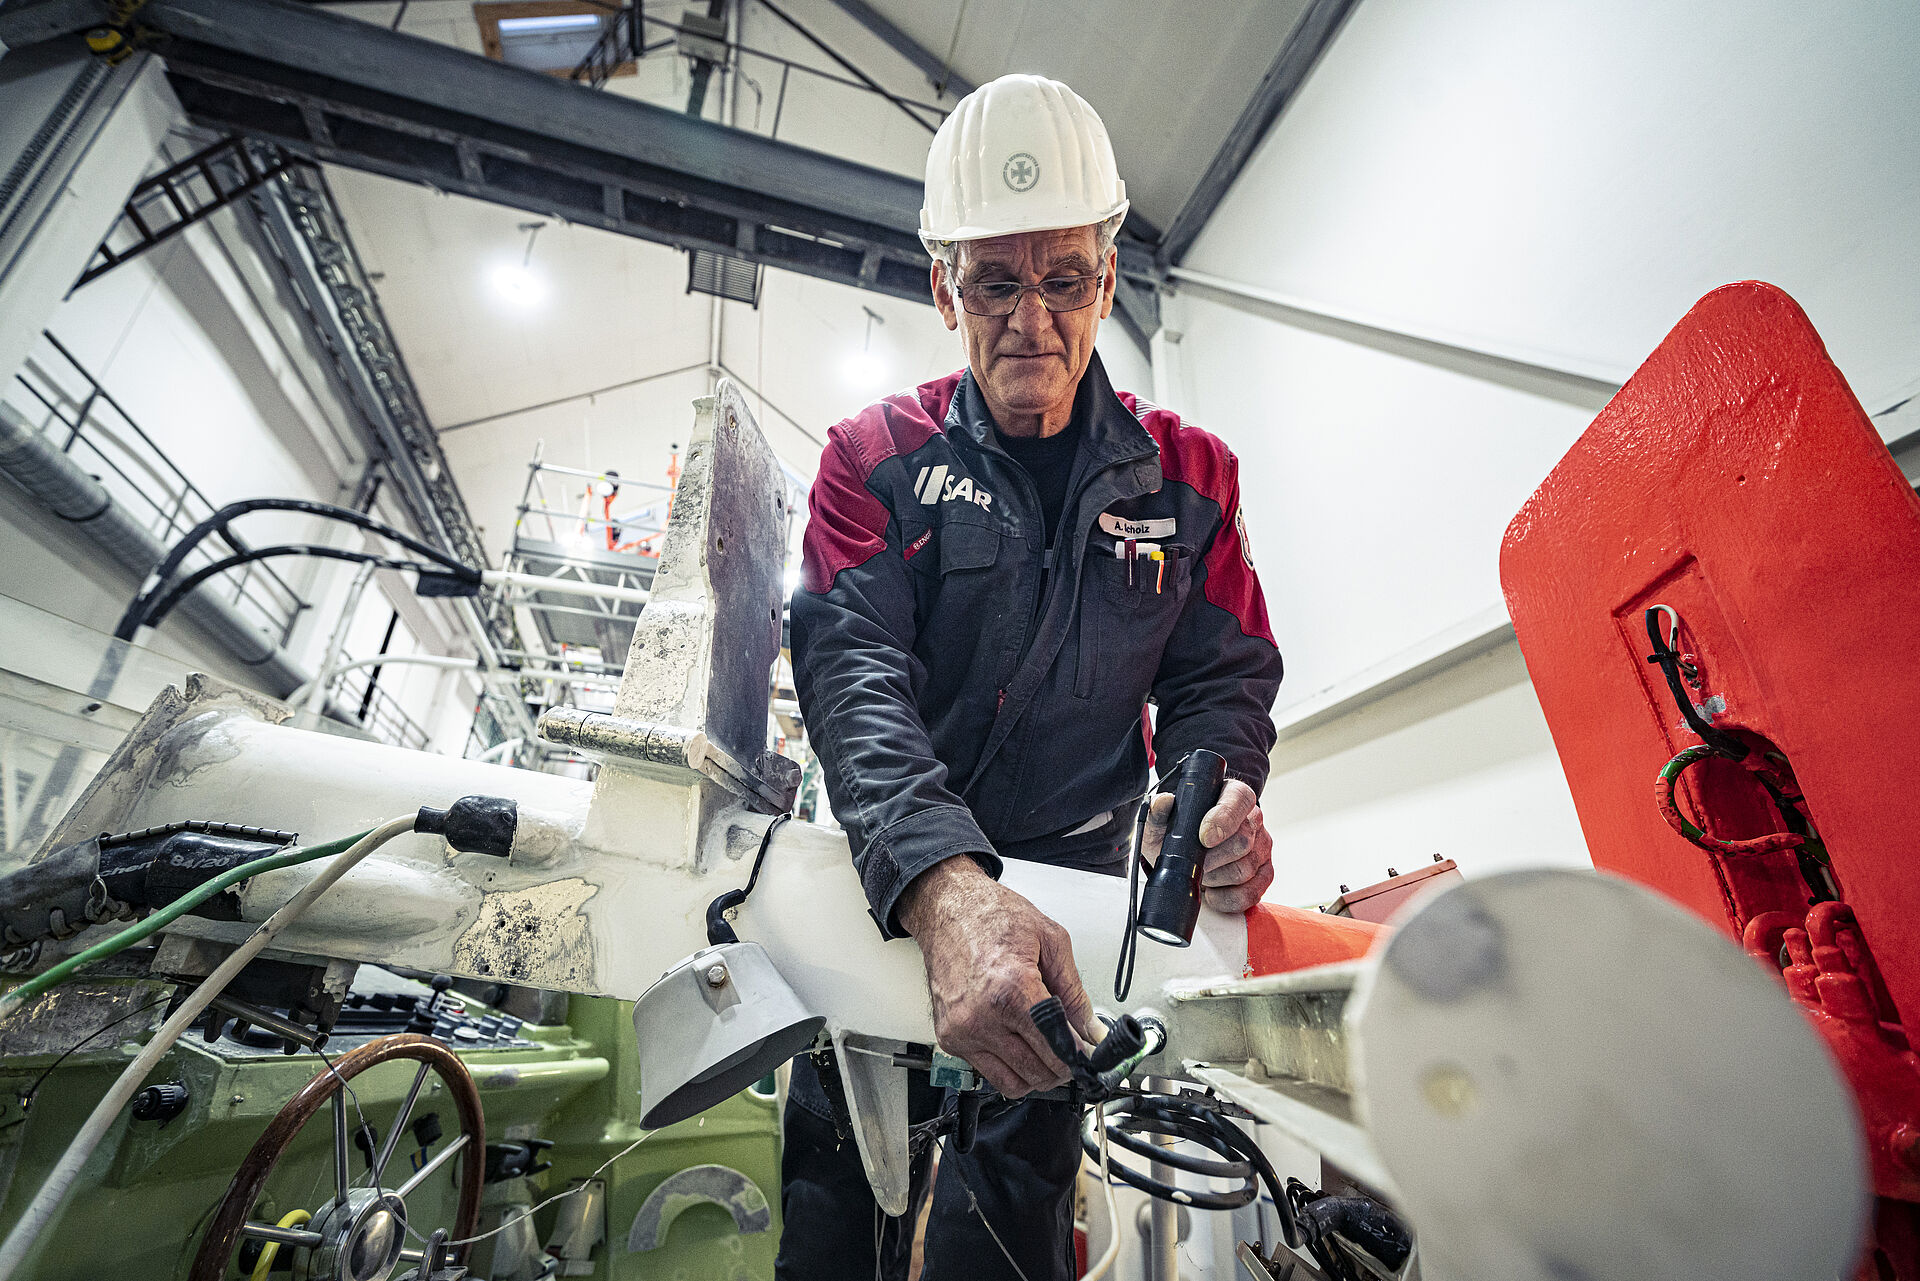 Elektriker Andreas Scholz kümmert sich am Mast der JOHANN FIDI um den richtigen Sitz der Kabel, die er später mit einem Warmschrumpfschlauch abdichtet. Bevor er im Jahr 2000 mit seinem großen Schiffbau-Know-how zu den Seenotrettern wechselte, hat er bei der Schiffs- und Bootswerft Fr. Schweers in Bardenfleth an der Unterweser gearbeitet. Egal, ob der 60-Jährige Kabel zieht, entfernt, sie vor Salzwasser schützt oder auf der Brücke die Kommunikations- und Navigationsanlagen einrichtet, stets weiß er, für wen er sein fachliches Können einsetzt: „Wir machen unsere Arbeit für die Menschen in Not und für unsere Besatzungen, sie alle sollen immer unversehrt wieder an Land zurückkehren.“ Das motiviert ihn täglich aufs Neue, treibt ihn genauso wie seine Kollegen an.